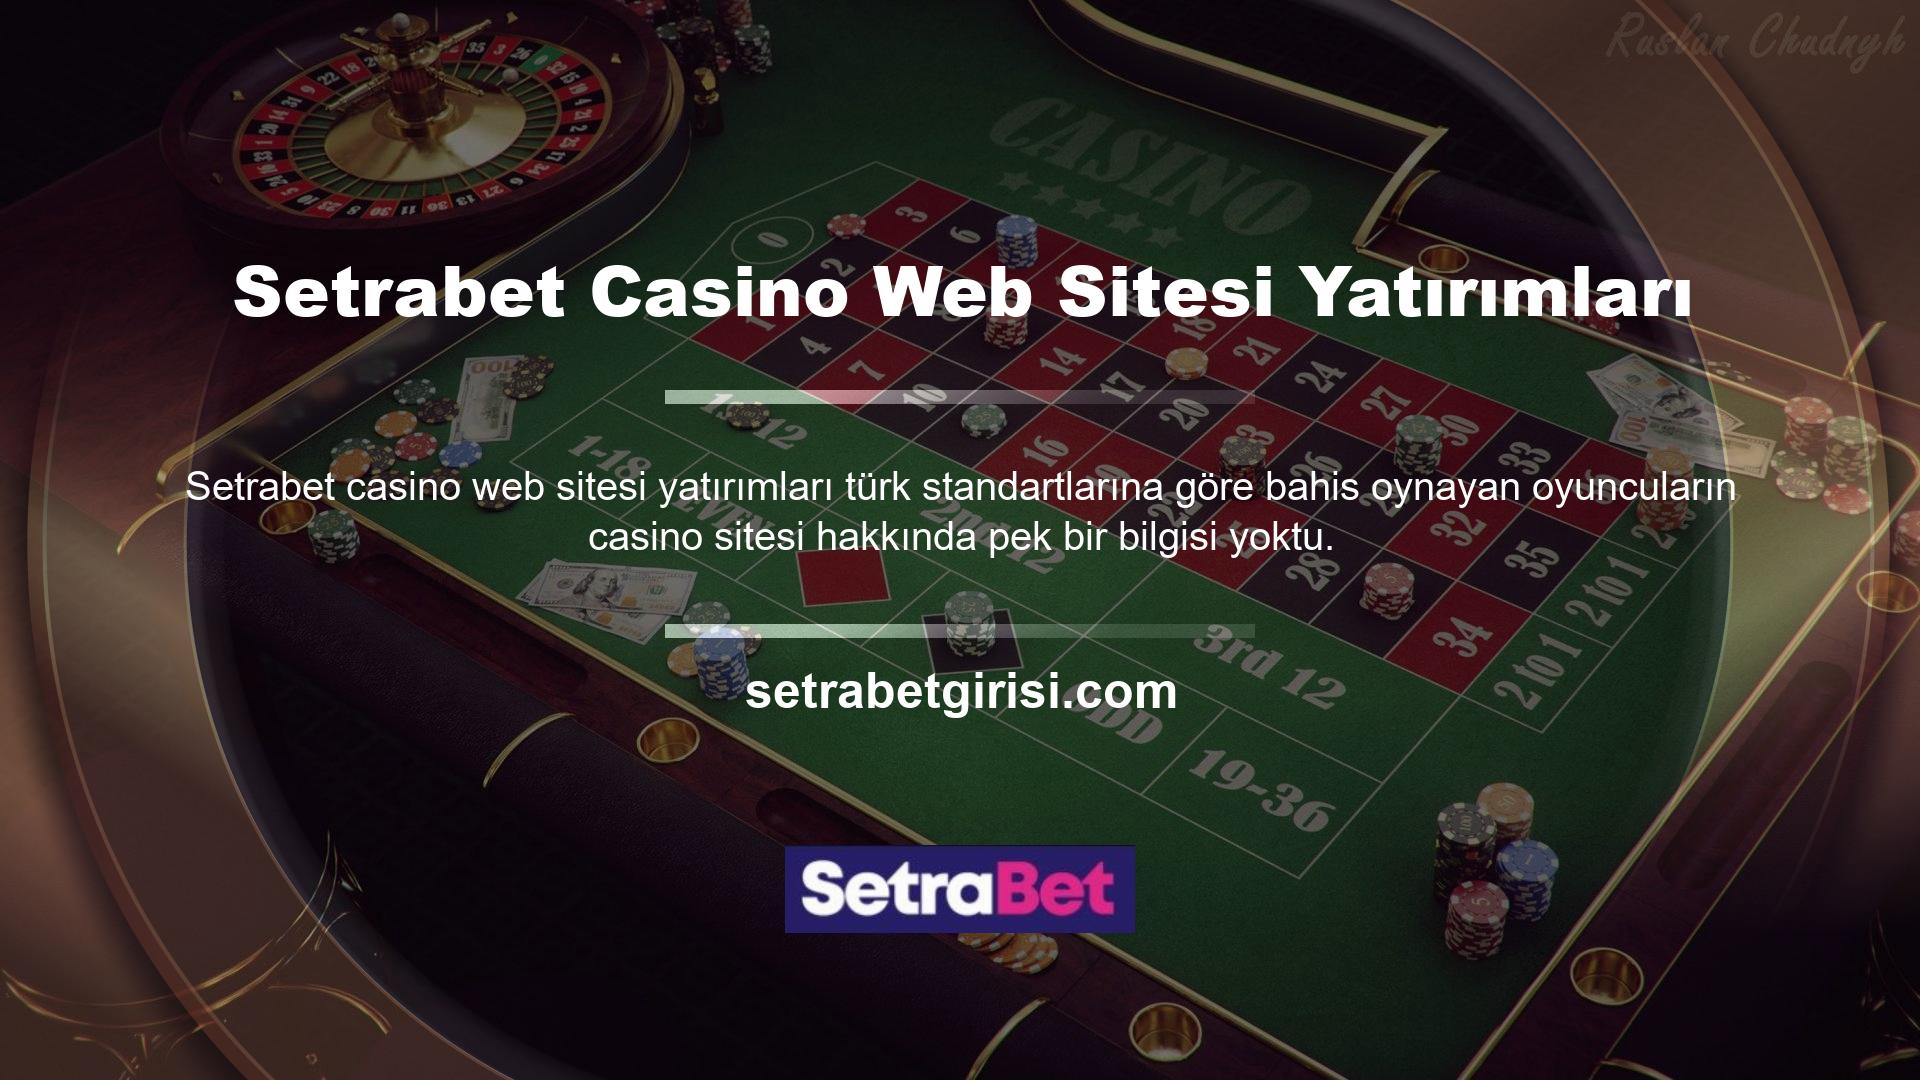 Bu arada Setrabet Harcama Casino web sitesi gibi gerçek zamanlı bahis siteleri, Türk bahisçilerin futbol ve basketbolla olan ilişkisini fark ederek böyle bir bahis platformuna olan ihtiyacı fark etti